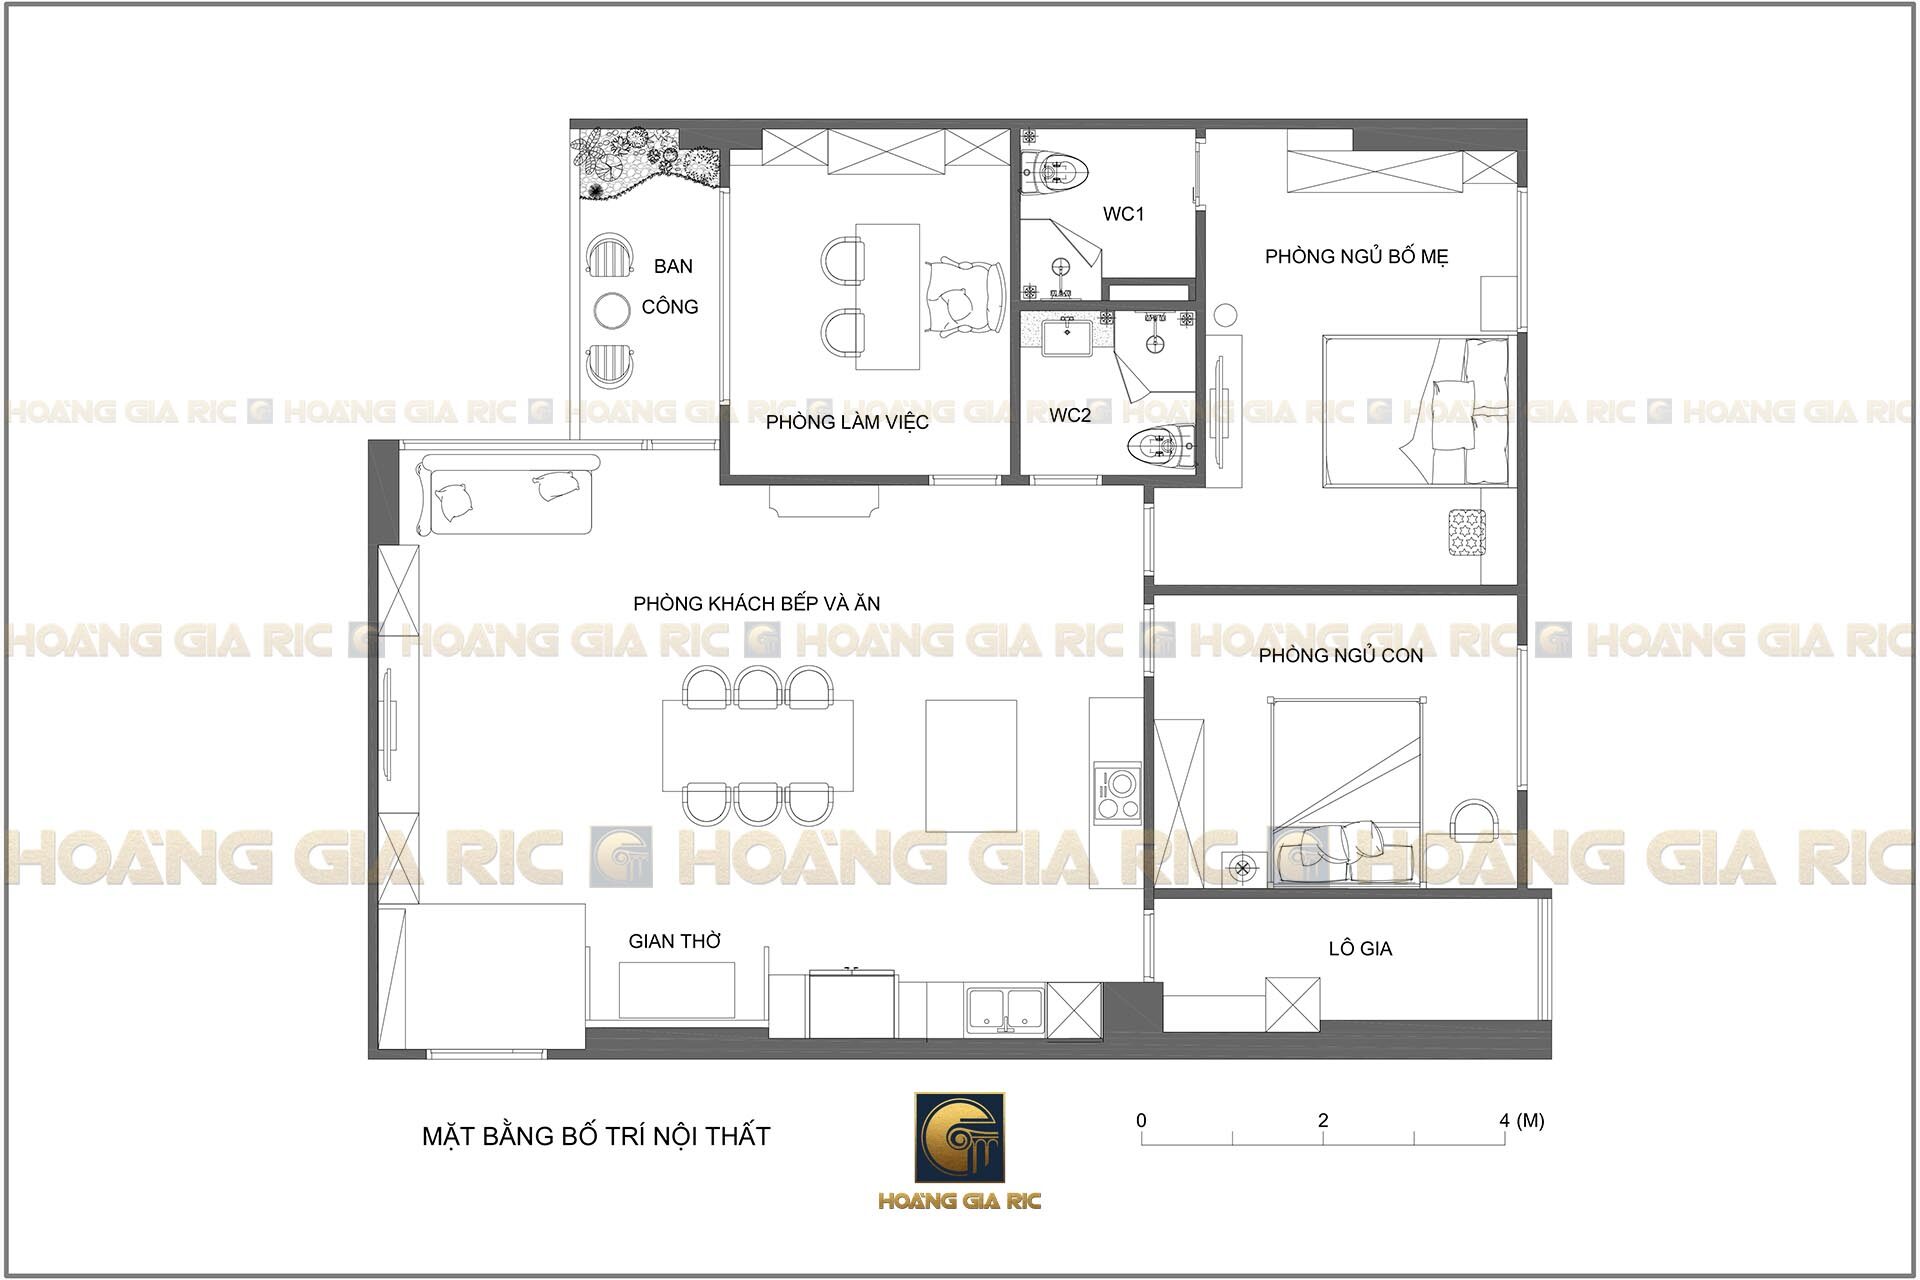 180927, mặt bằng chung cư 3 phòng ngủ, 125 m2.